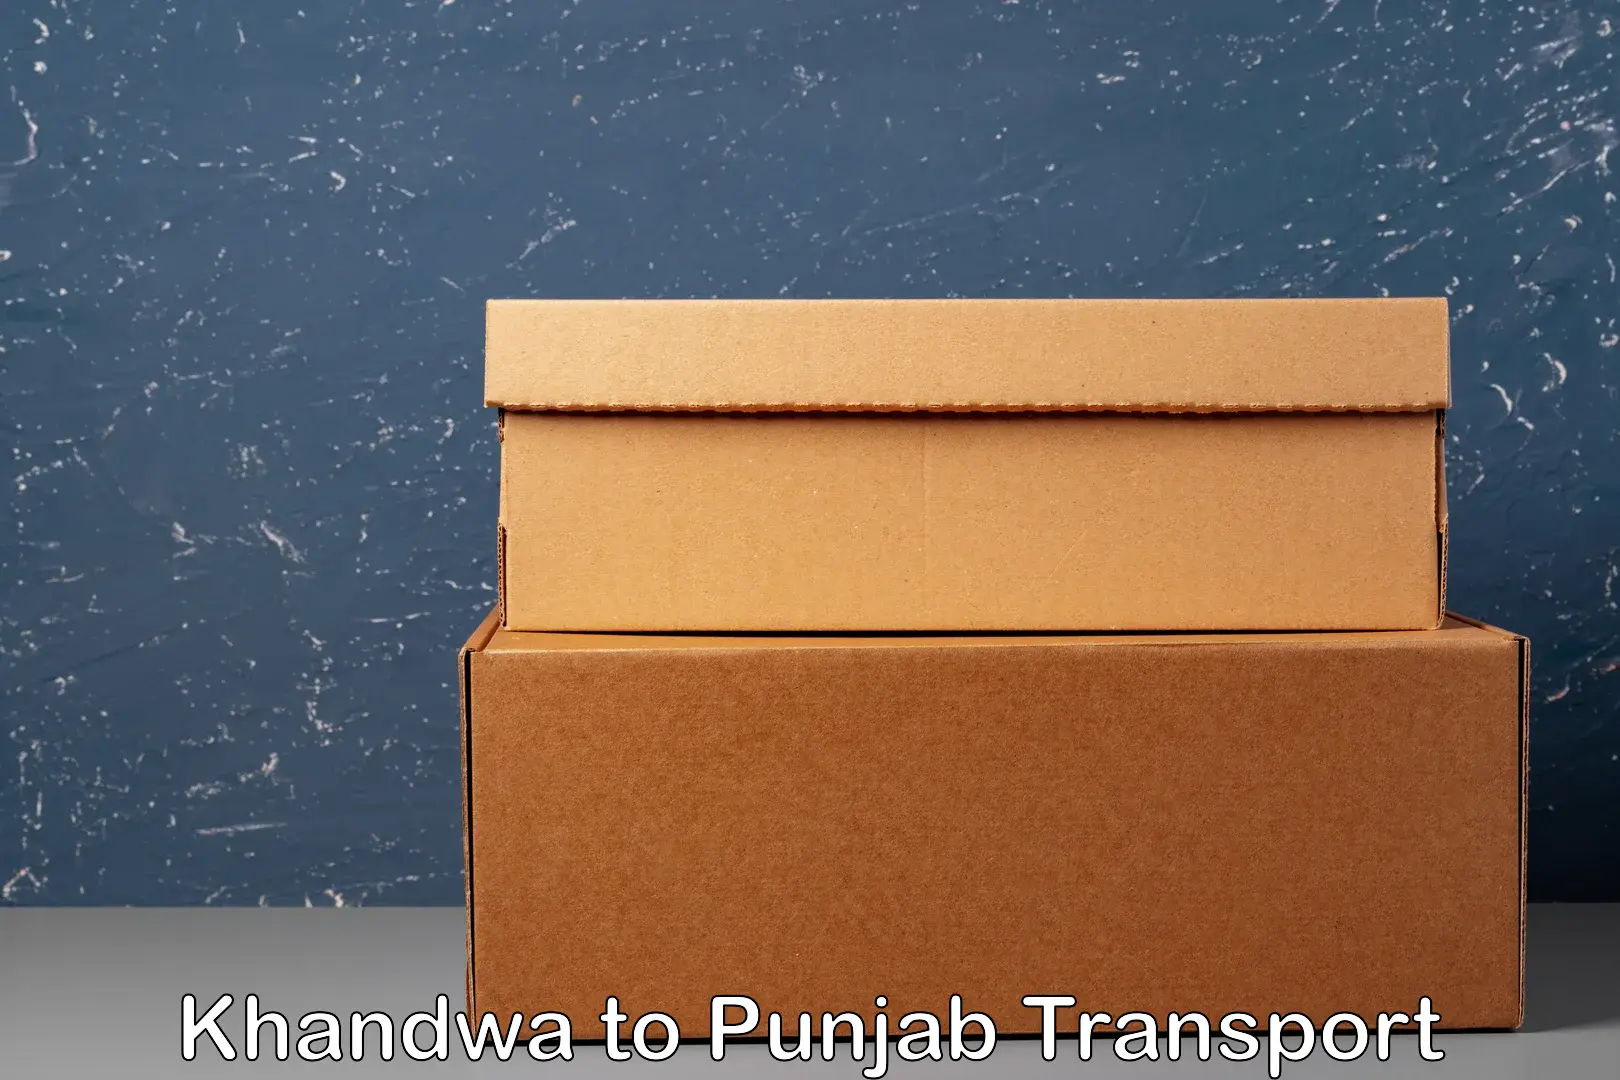 Nearby transport service Khandwa to Punjab